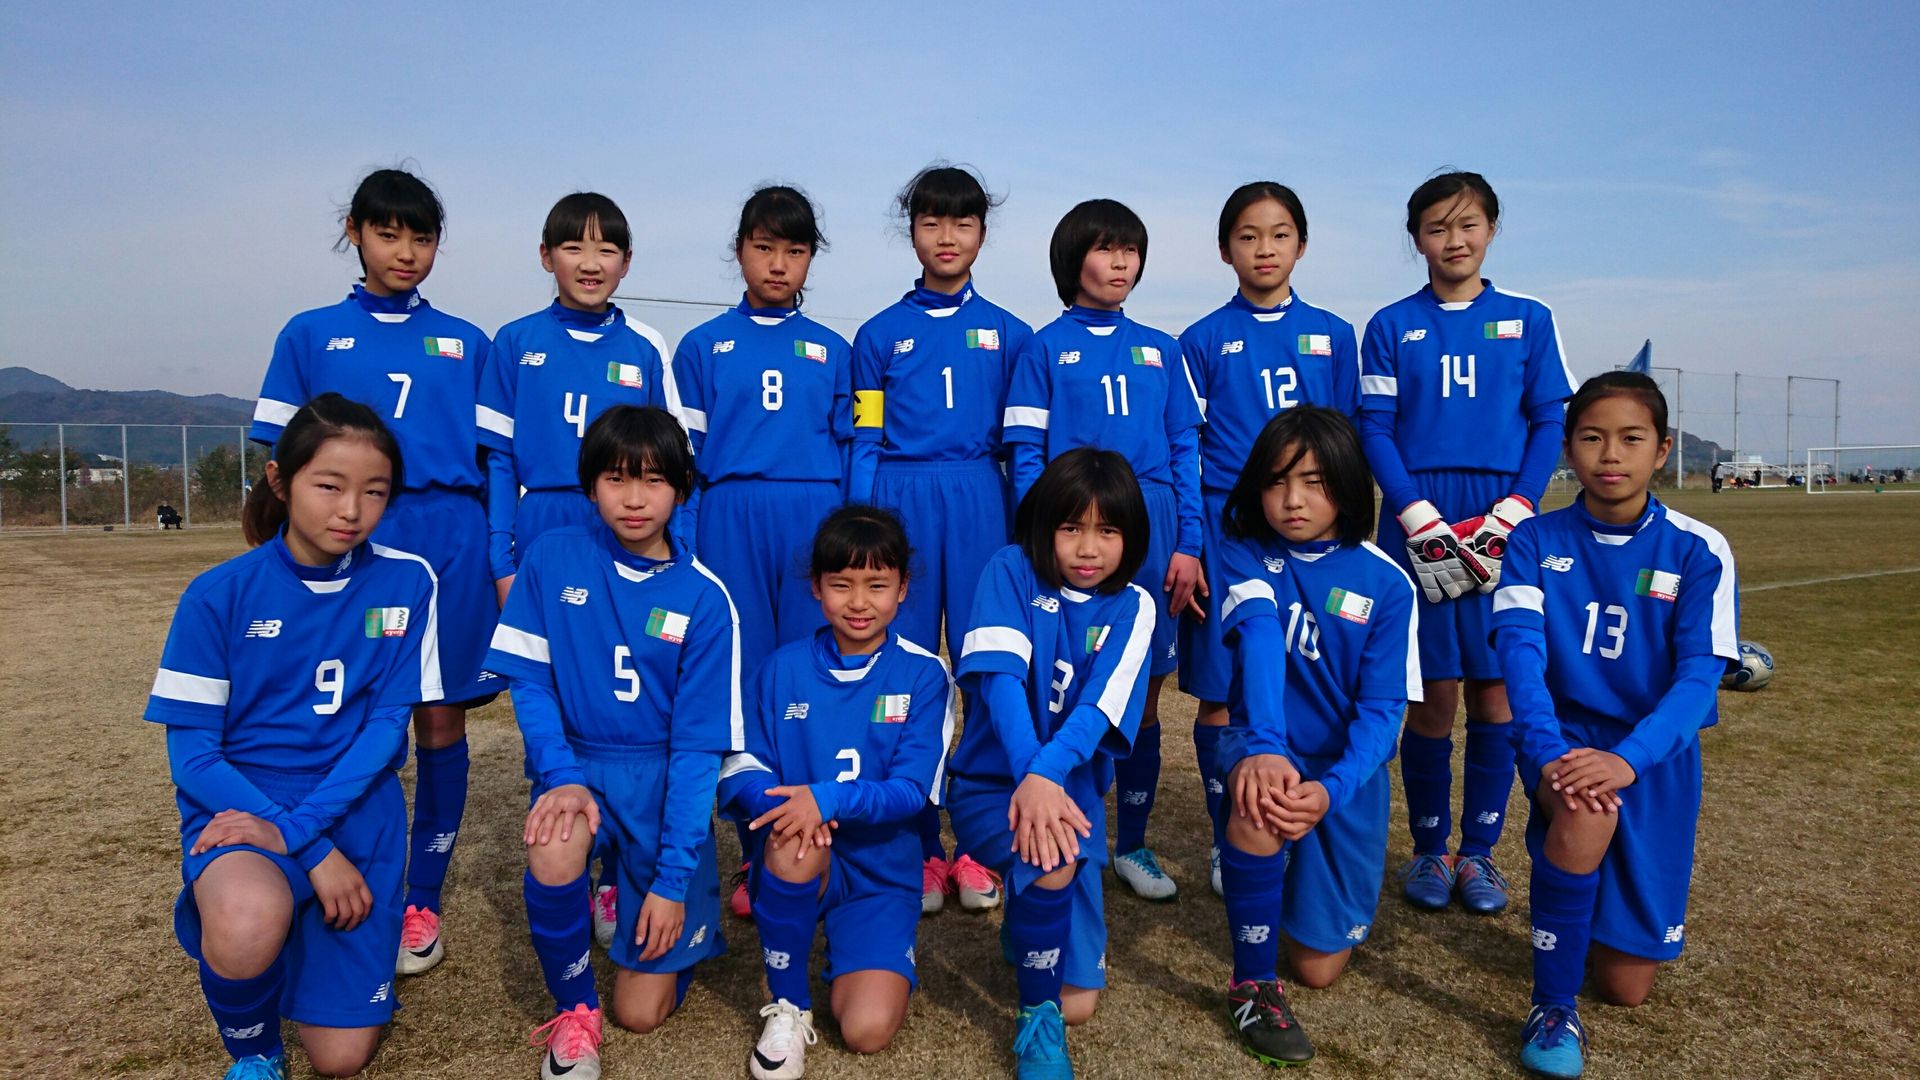 12月25日 月 愛知県小学生女子サッカー選手権大会 第３位 Wyvern 刈谷市少年サッカークラブ